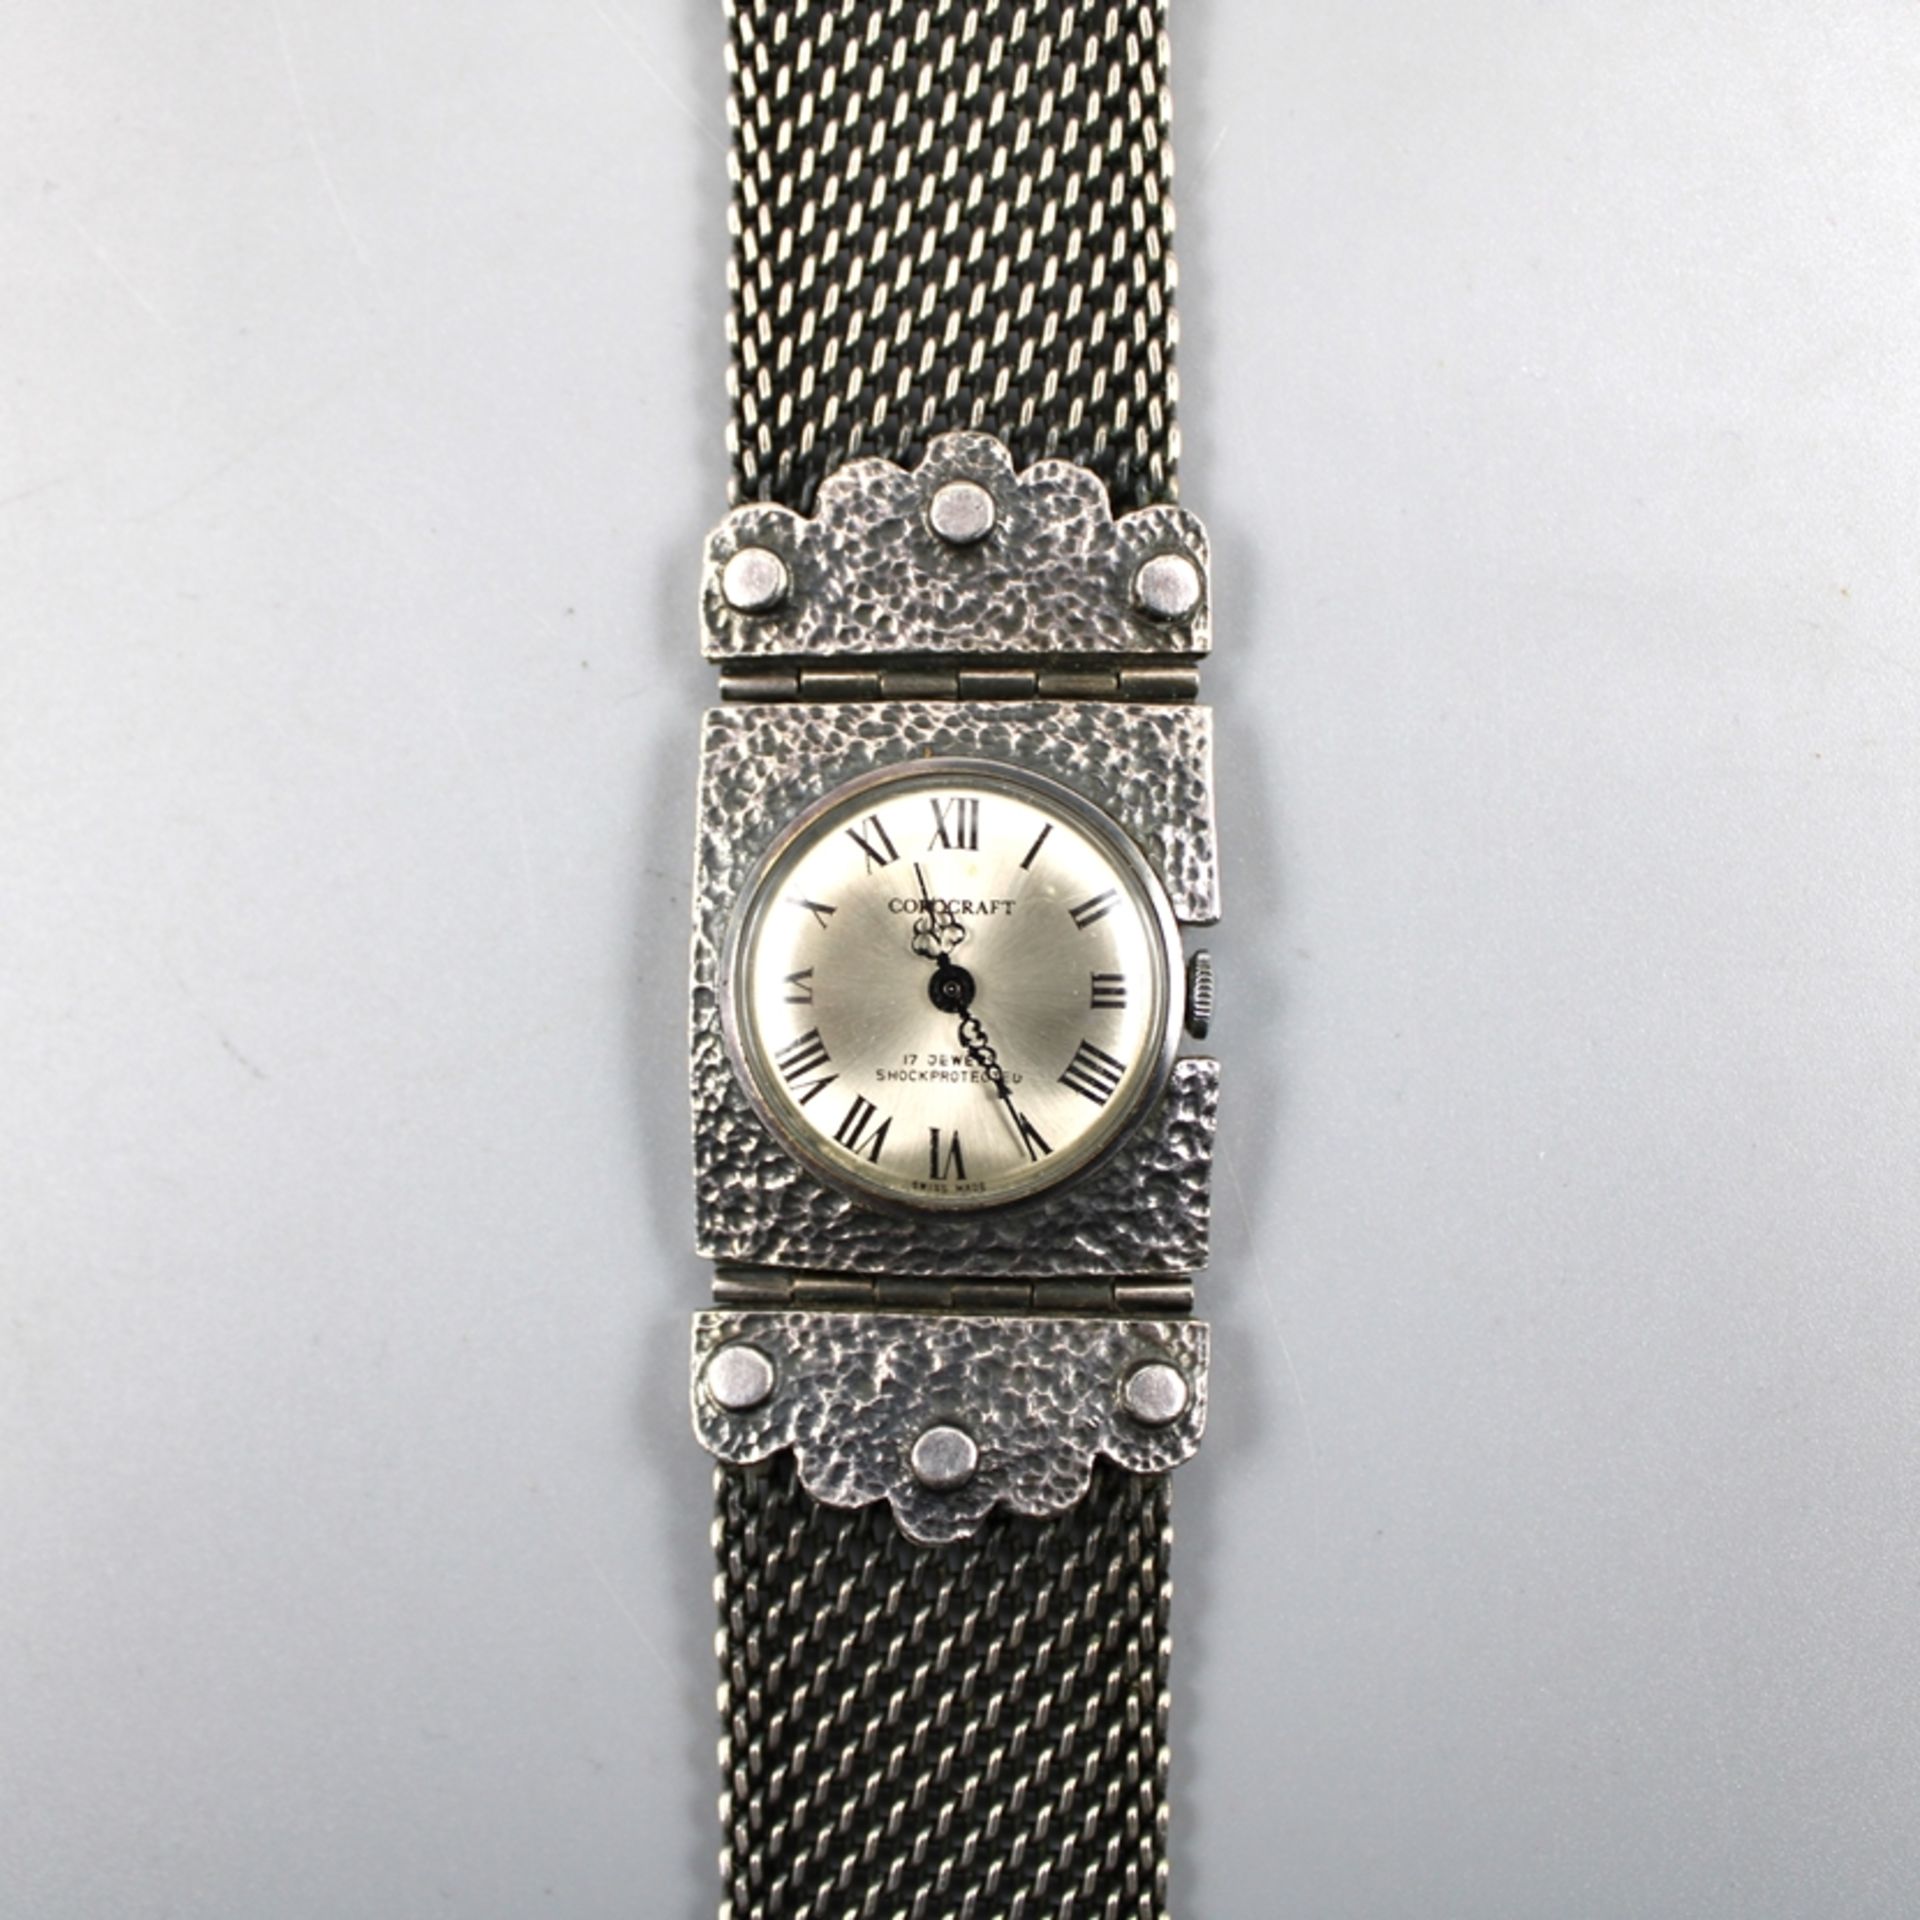 Corocraft Damenuhr Handaufzug, die Uhr läuft an (Ganggenauigkeit u. Laufdauer nicht geprüft) - Image 2 of 3